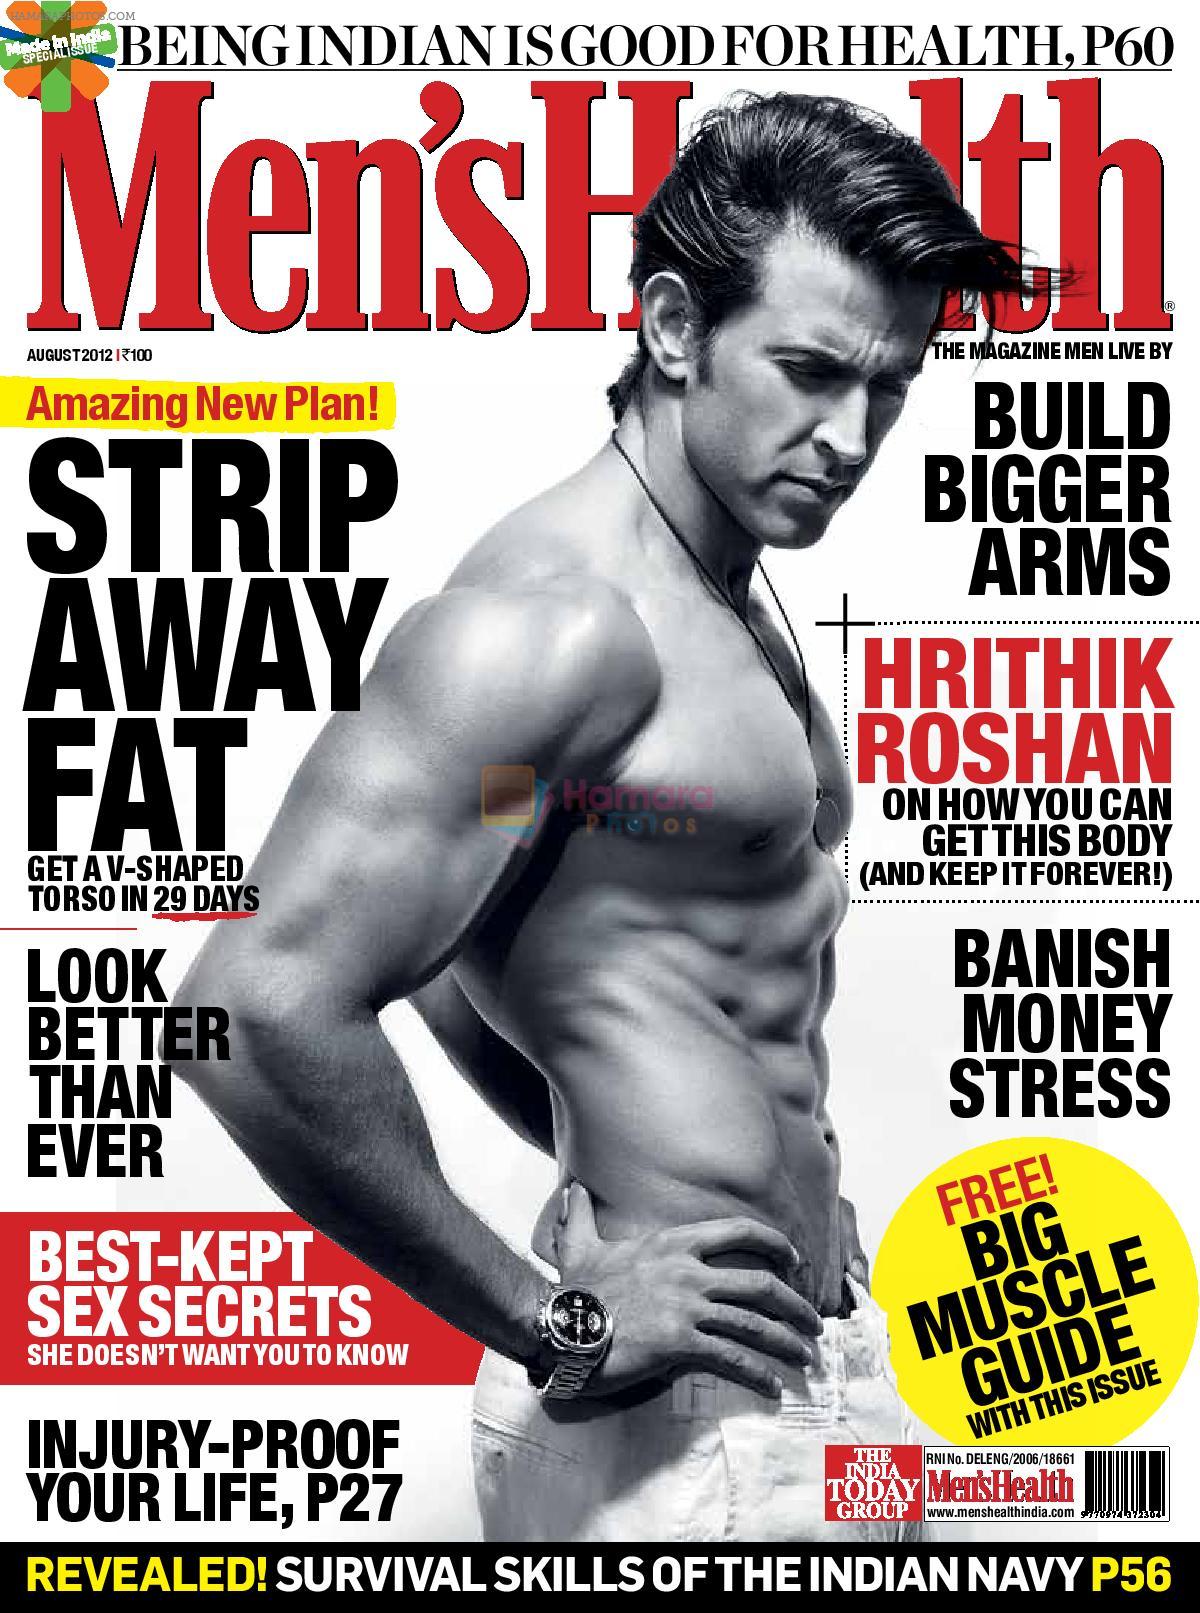 Hrithik Roshan on Men's Health August 2012 Cover